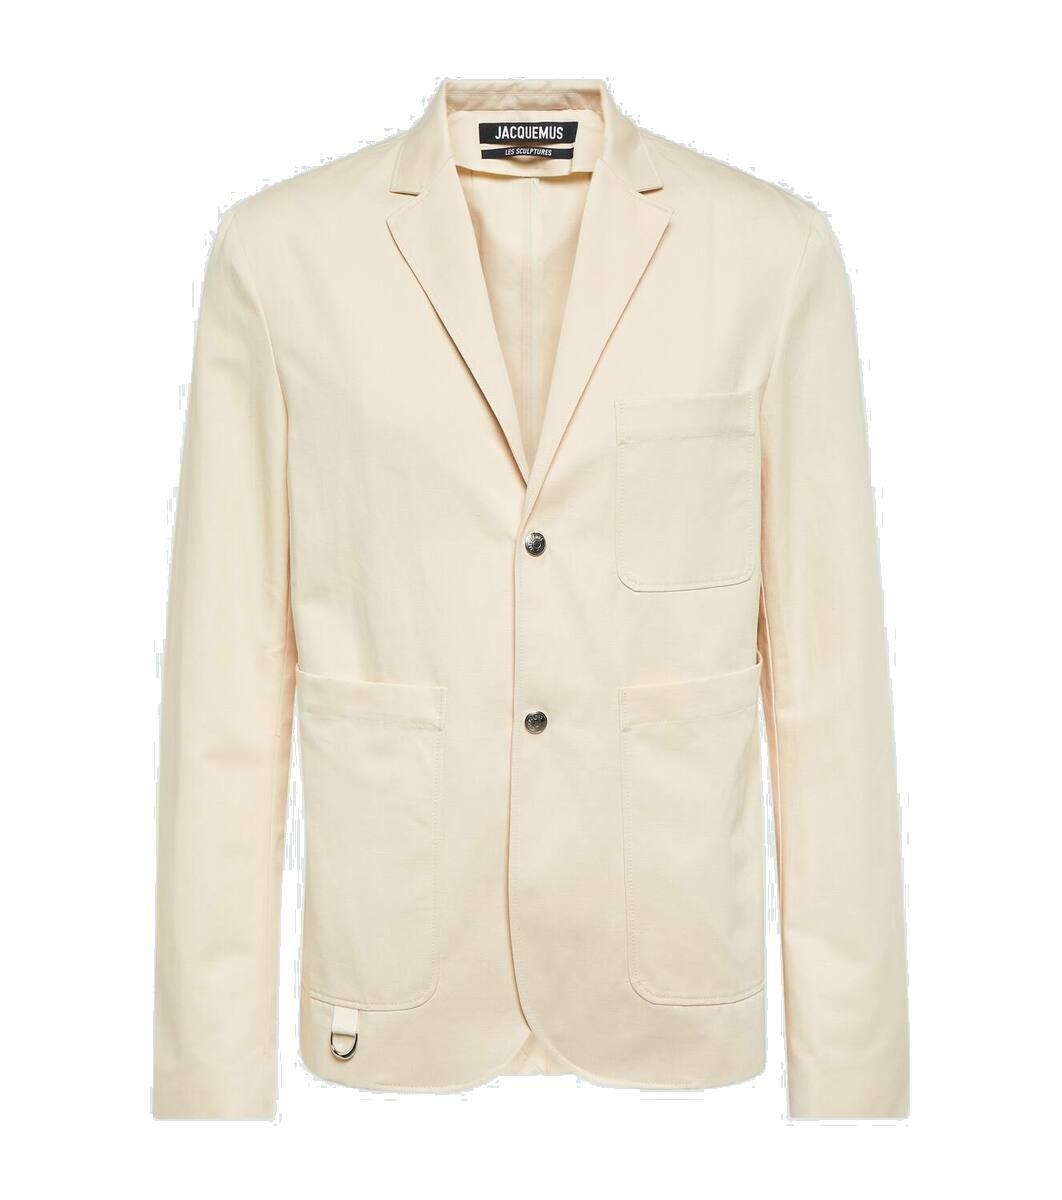 Photo: Jacquemus La veste Jean cotton and linen blazer